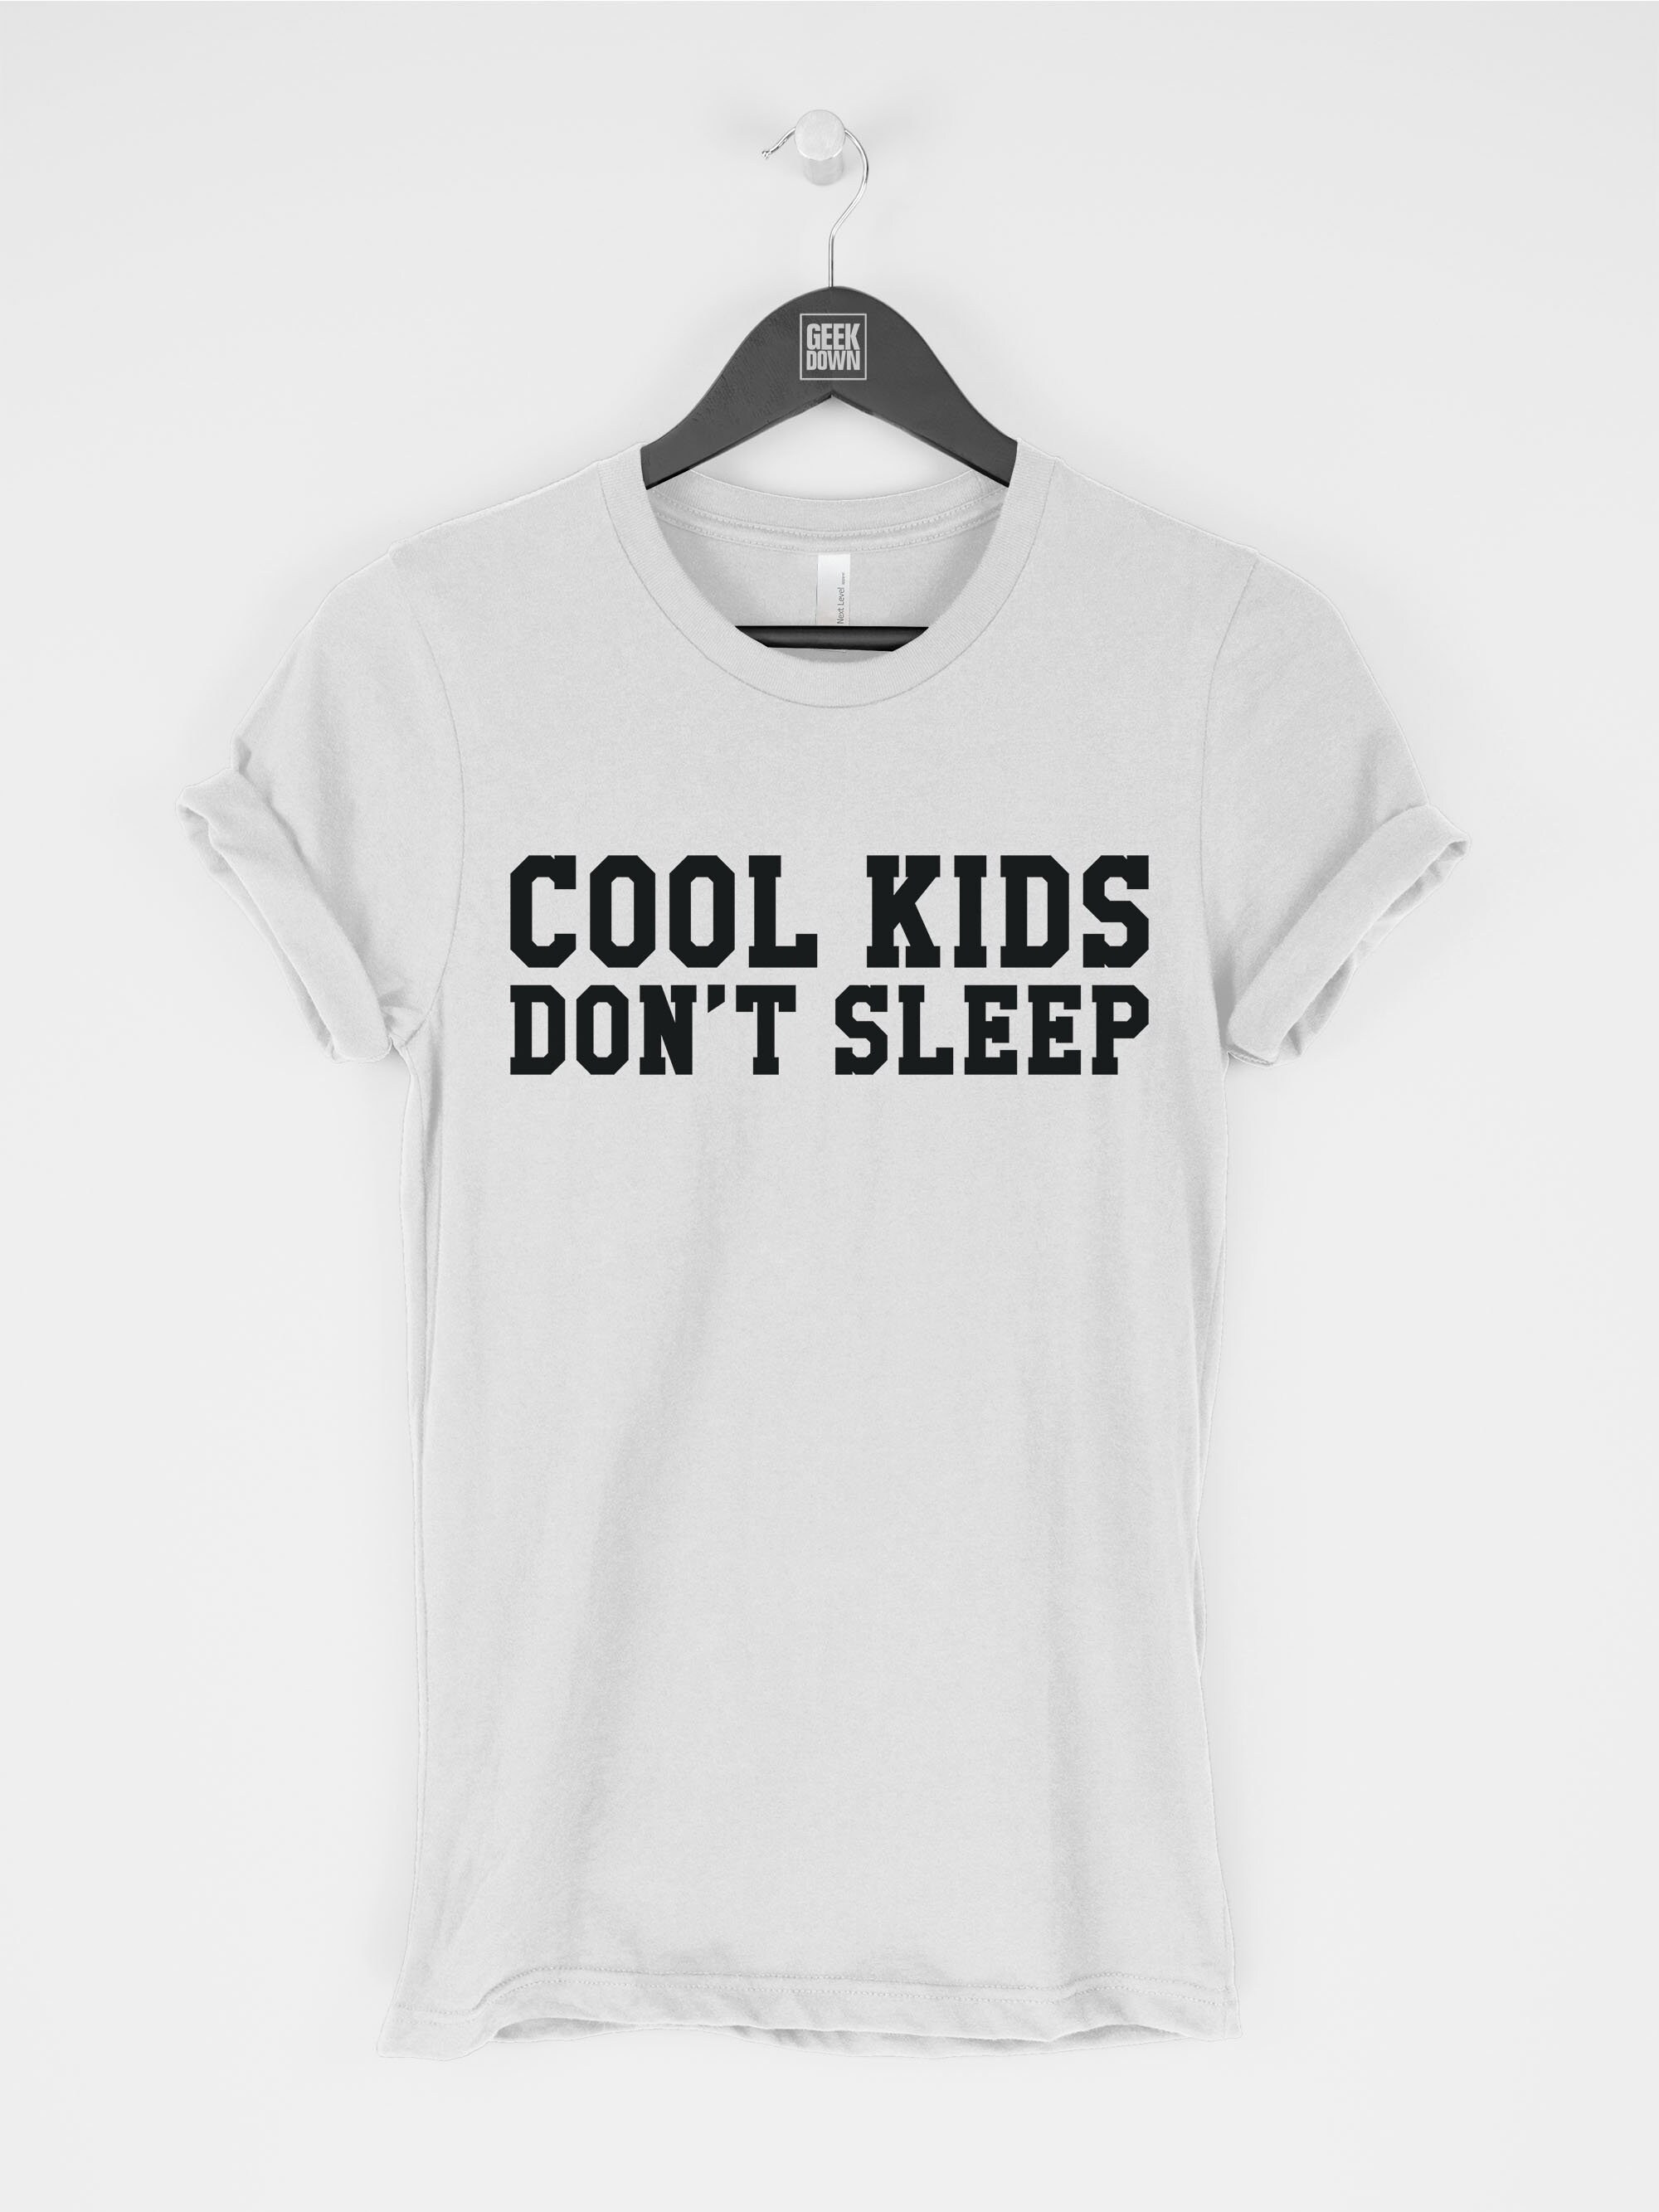 Cool Kids Don't Sleep t-shirt tee funny tees / Funny Tee | Etsy